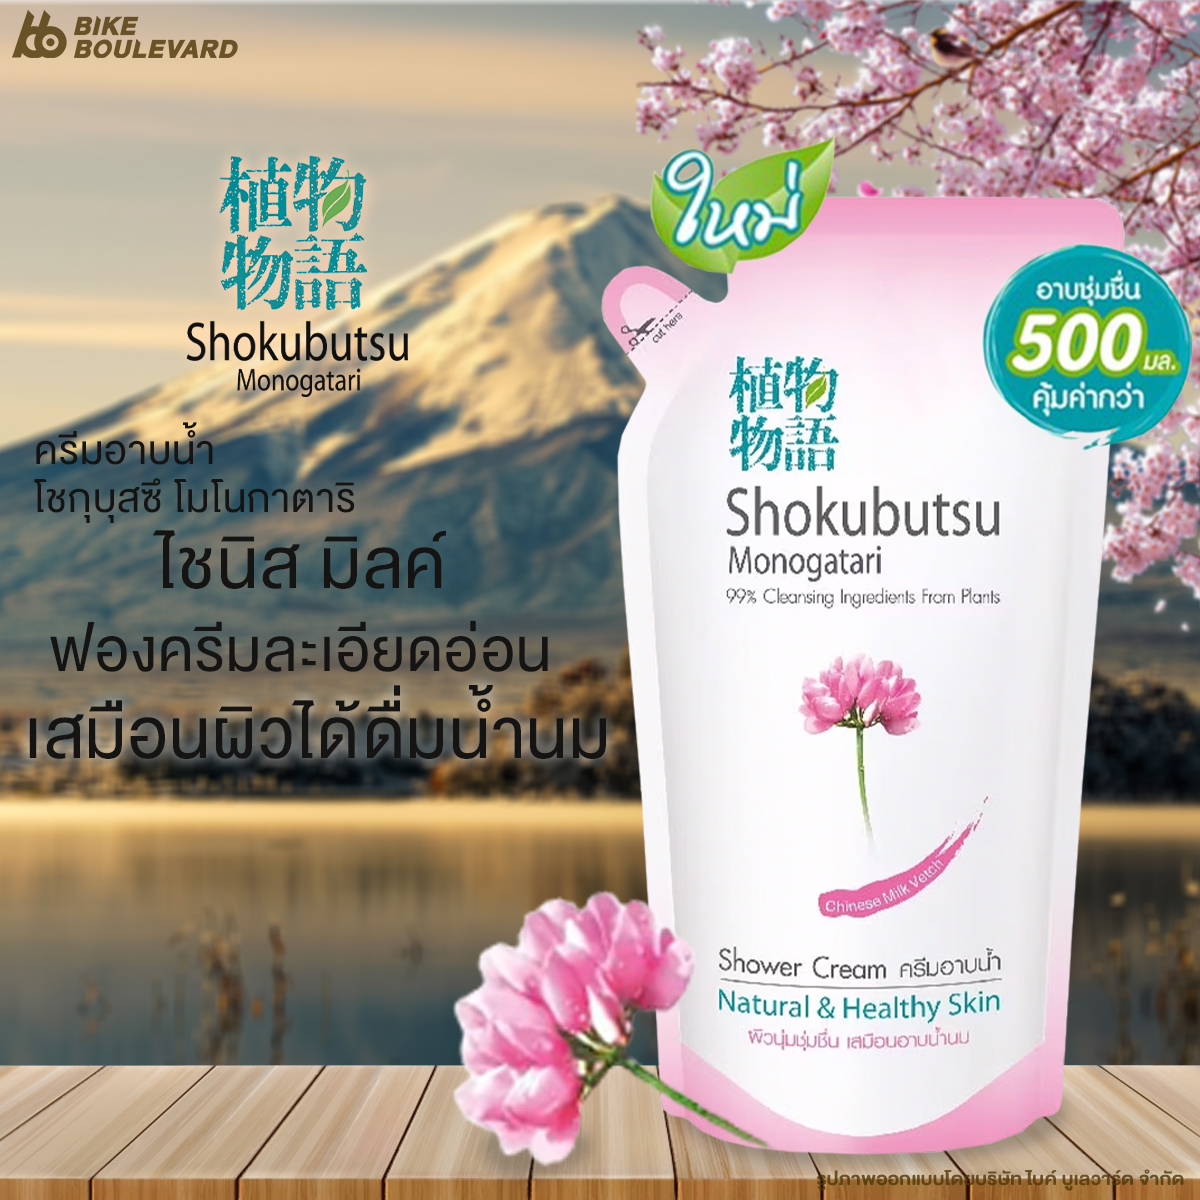 ชุดผลิตภัณฑ์อาบน้ำและดูแลผิวกาย Shokubutsu โชกุบุสซึ ครีมอาบน้ำ ขนาด 500 มล. มี 5 กลิ่น สบู่ สบู่เหลว สบู่อาบน้ำ ครีมอาบน้ำถุงเติม ครีมอาบน้ำตัวหอม ครีมอาบน้ําโชกุบุสซึ